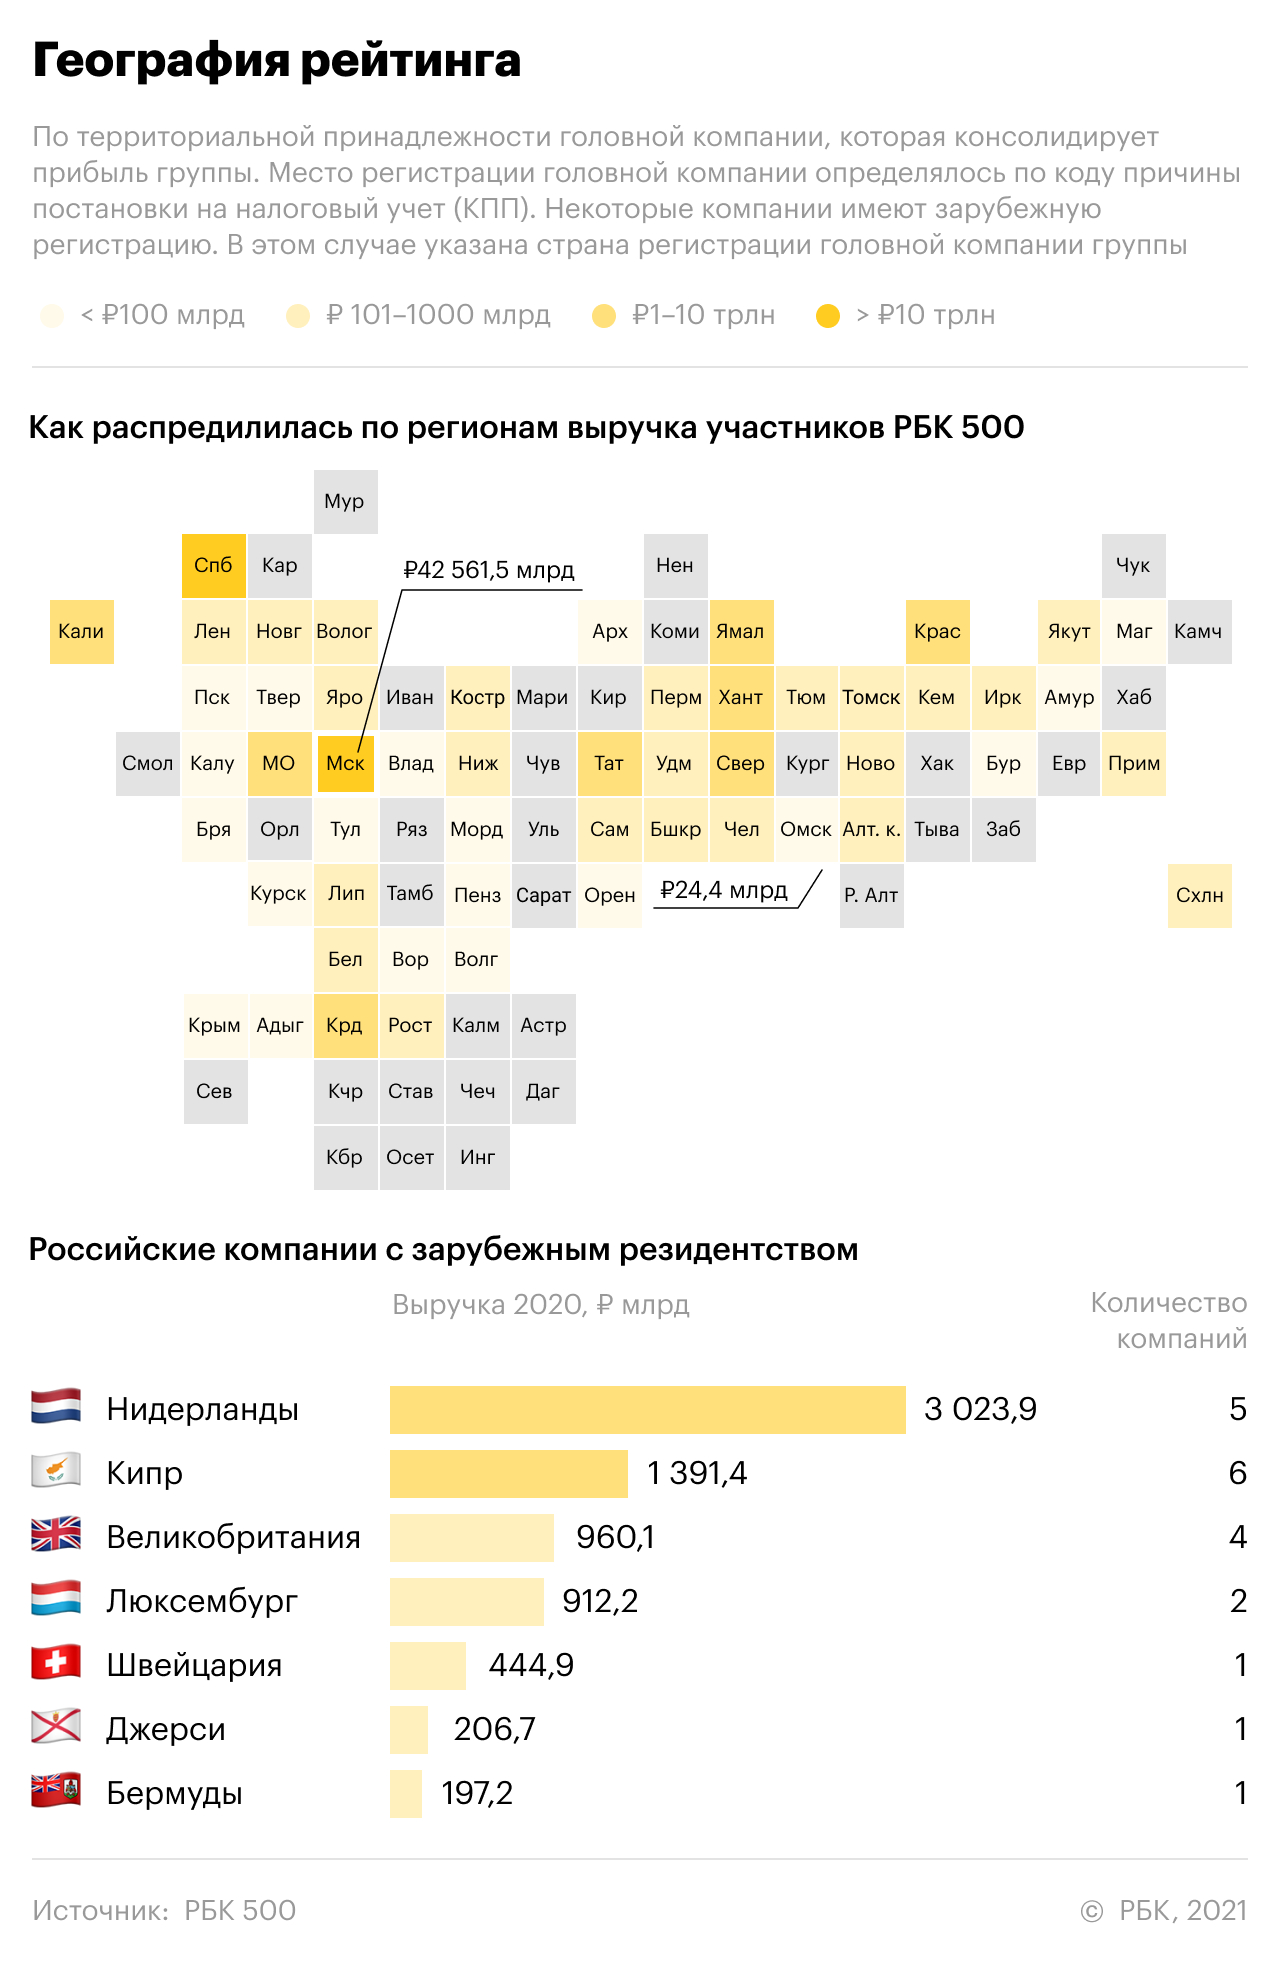 Рейтинг крупнейших компаний России РБК 500: ключевые факты